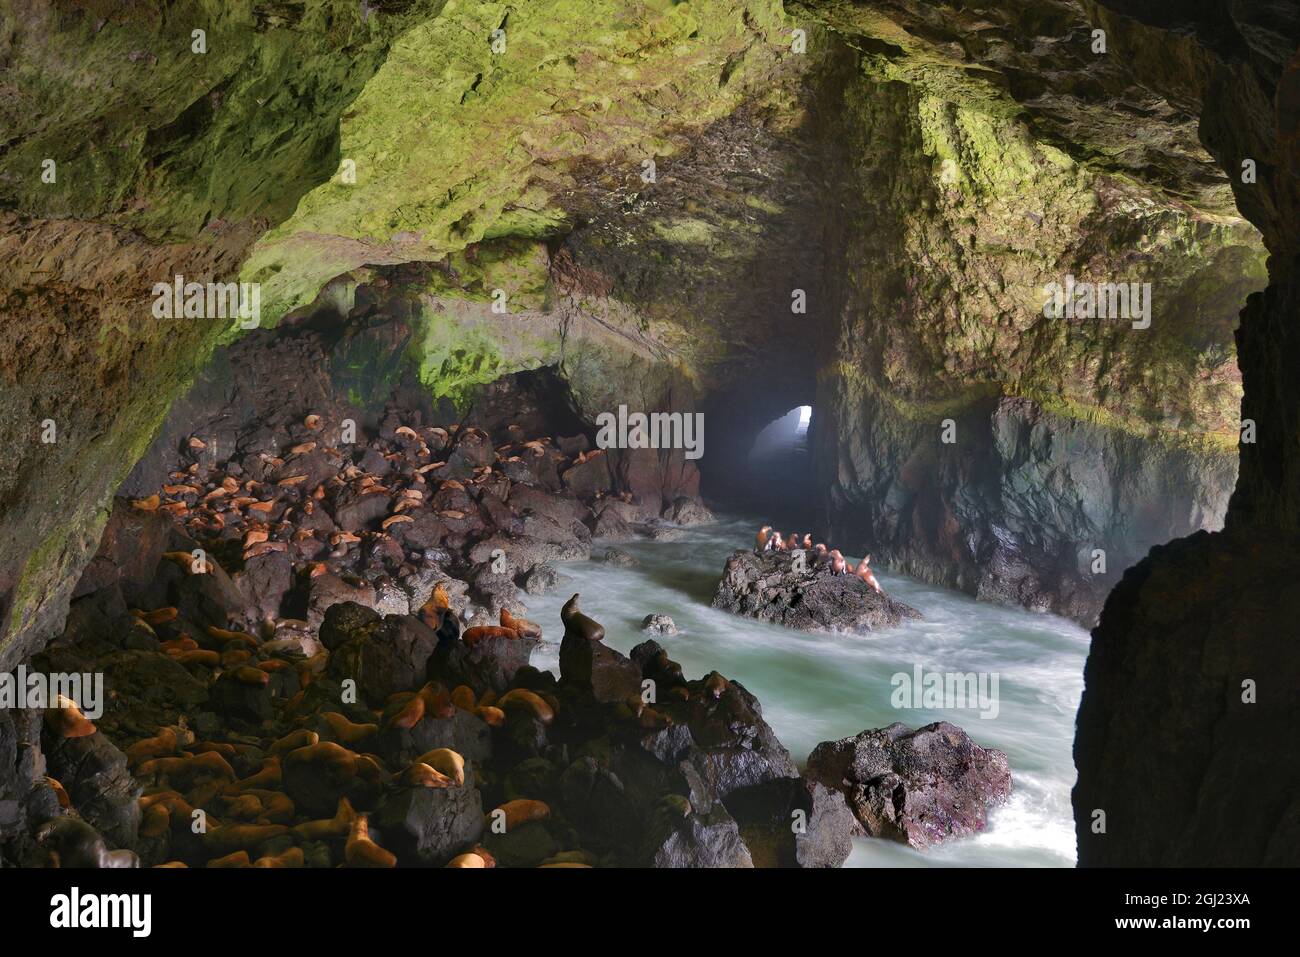 USA, Oregon. Sea lions inside cave on coast. on coast. Stock Photo